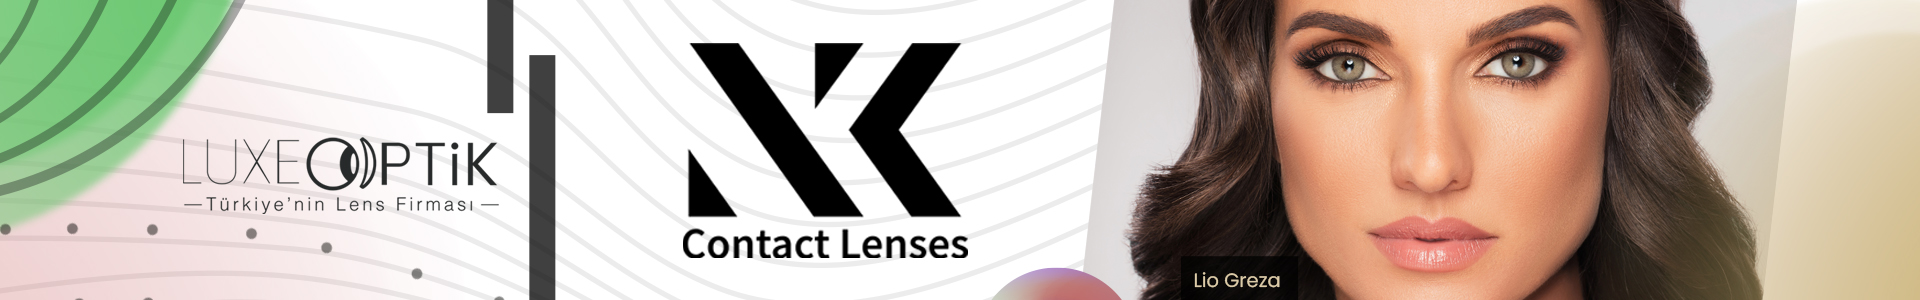 NK Renkli Lens Modelleri Ve Fiyatları